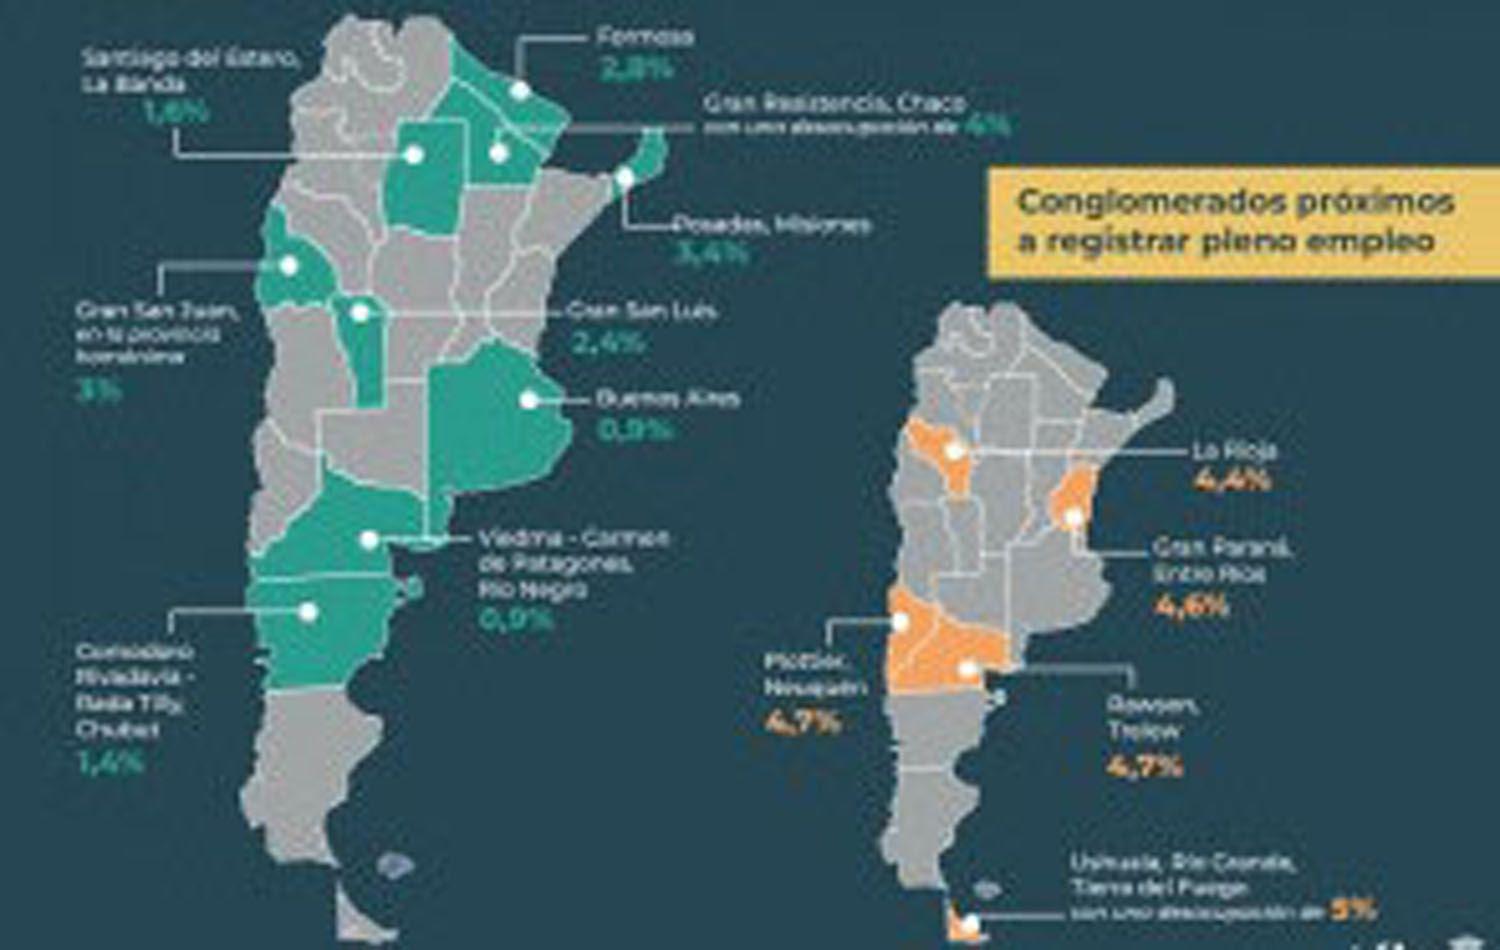 Santiago-Banda y 7 aglomerados urbanos alcanzaron pleno empleo